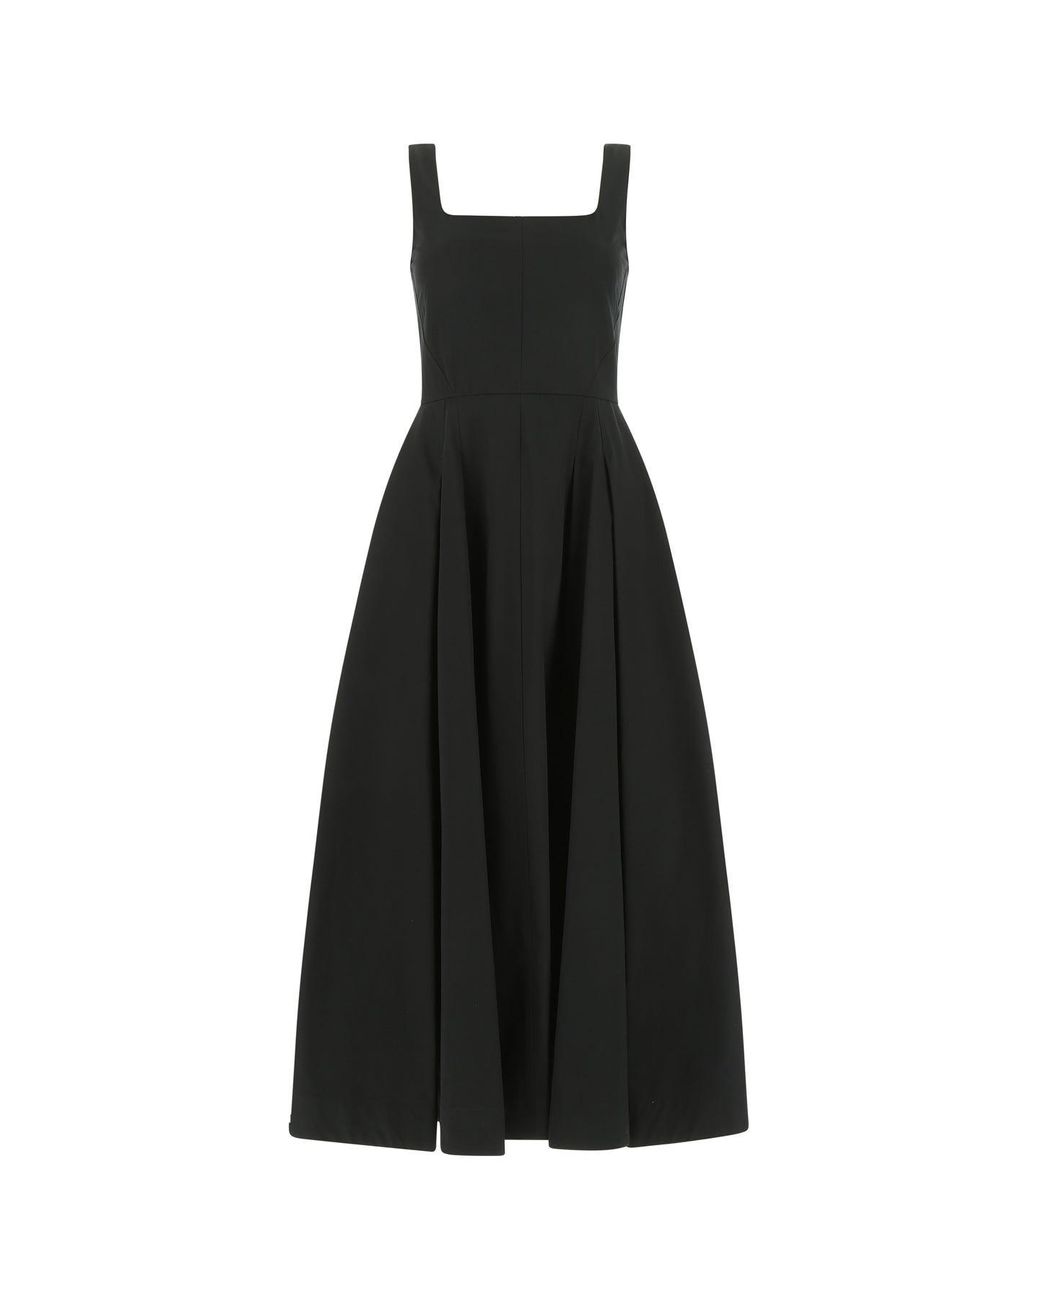 Sportmax Cotton Faida Dress in Black | Lyst